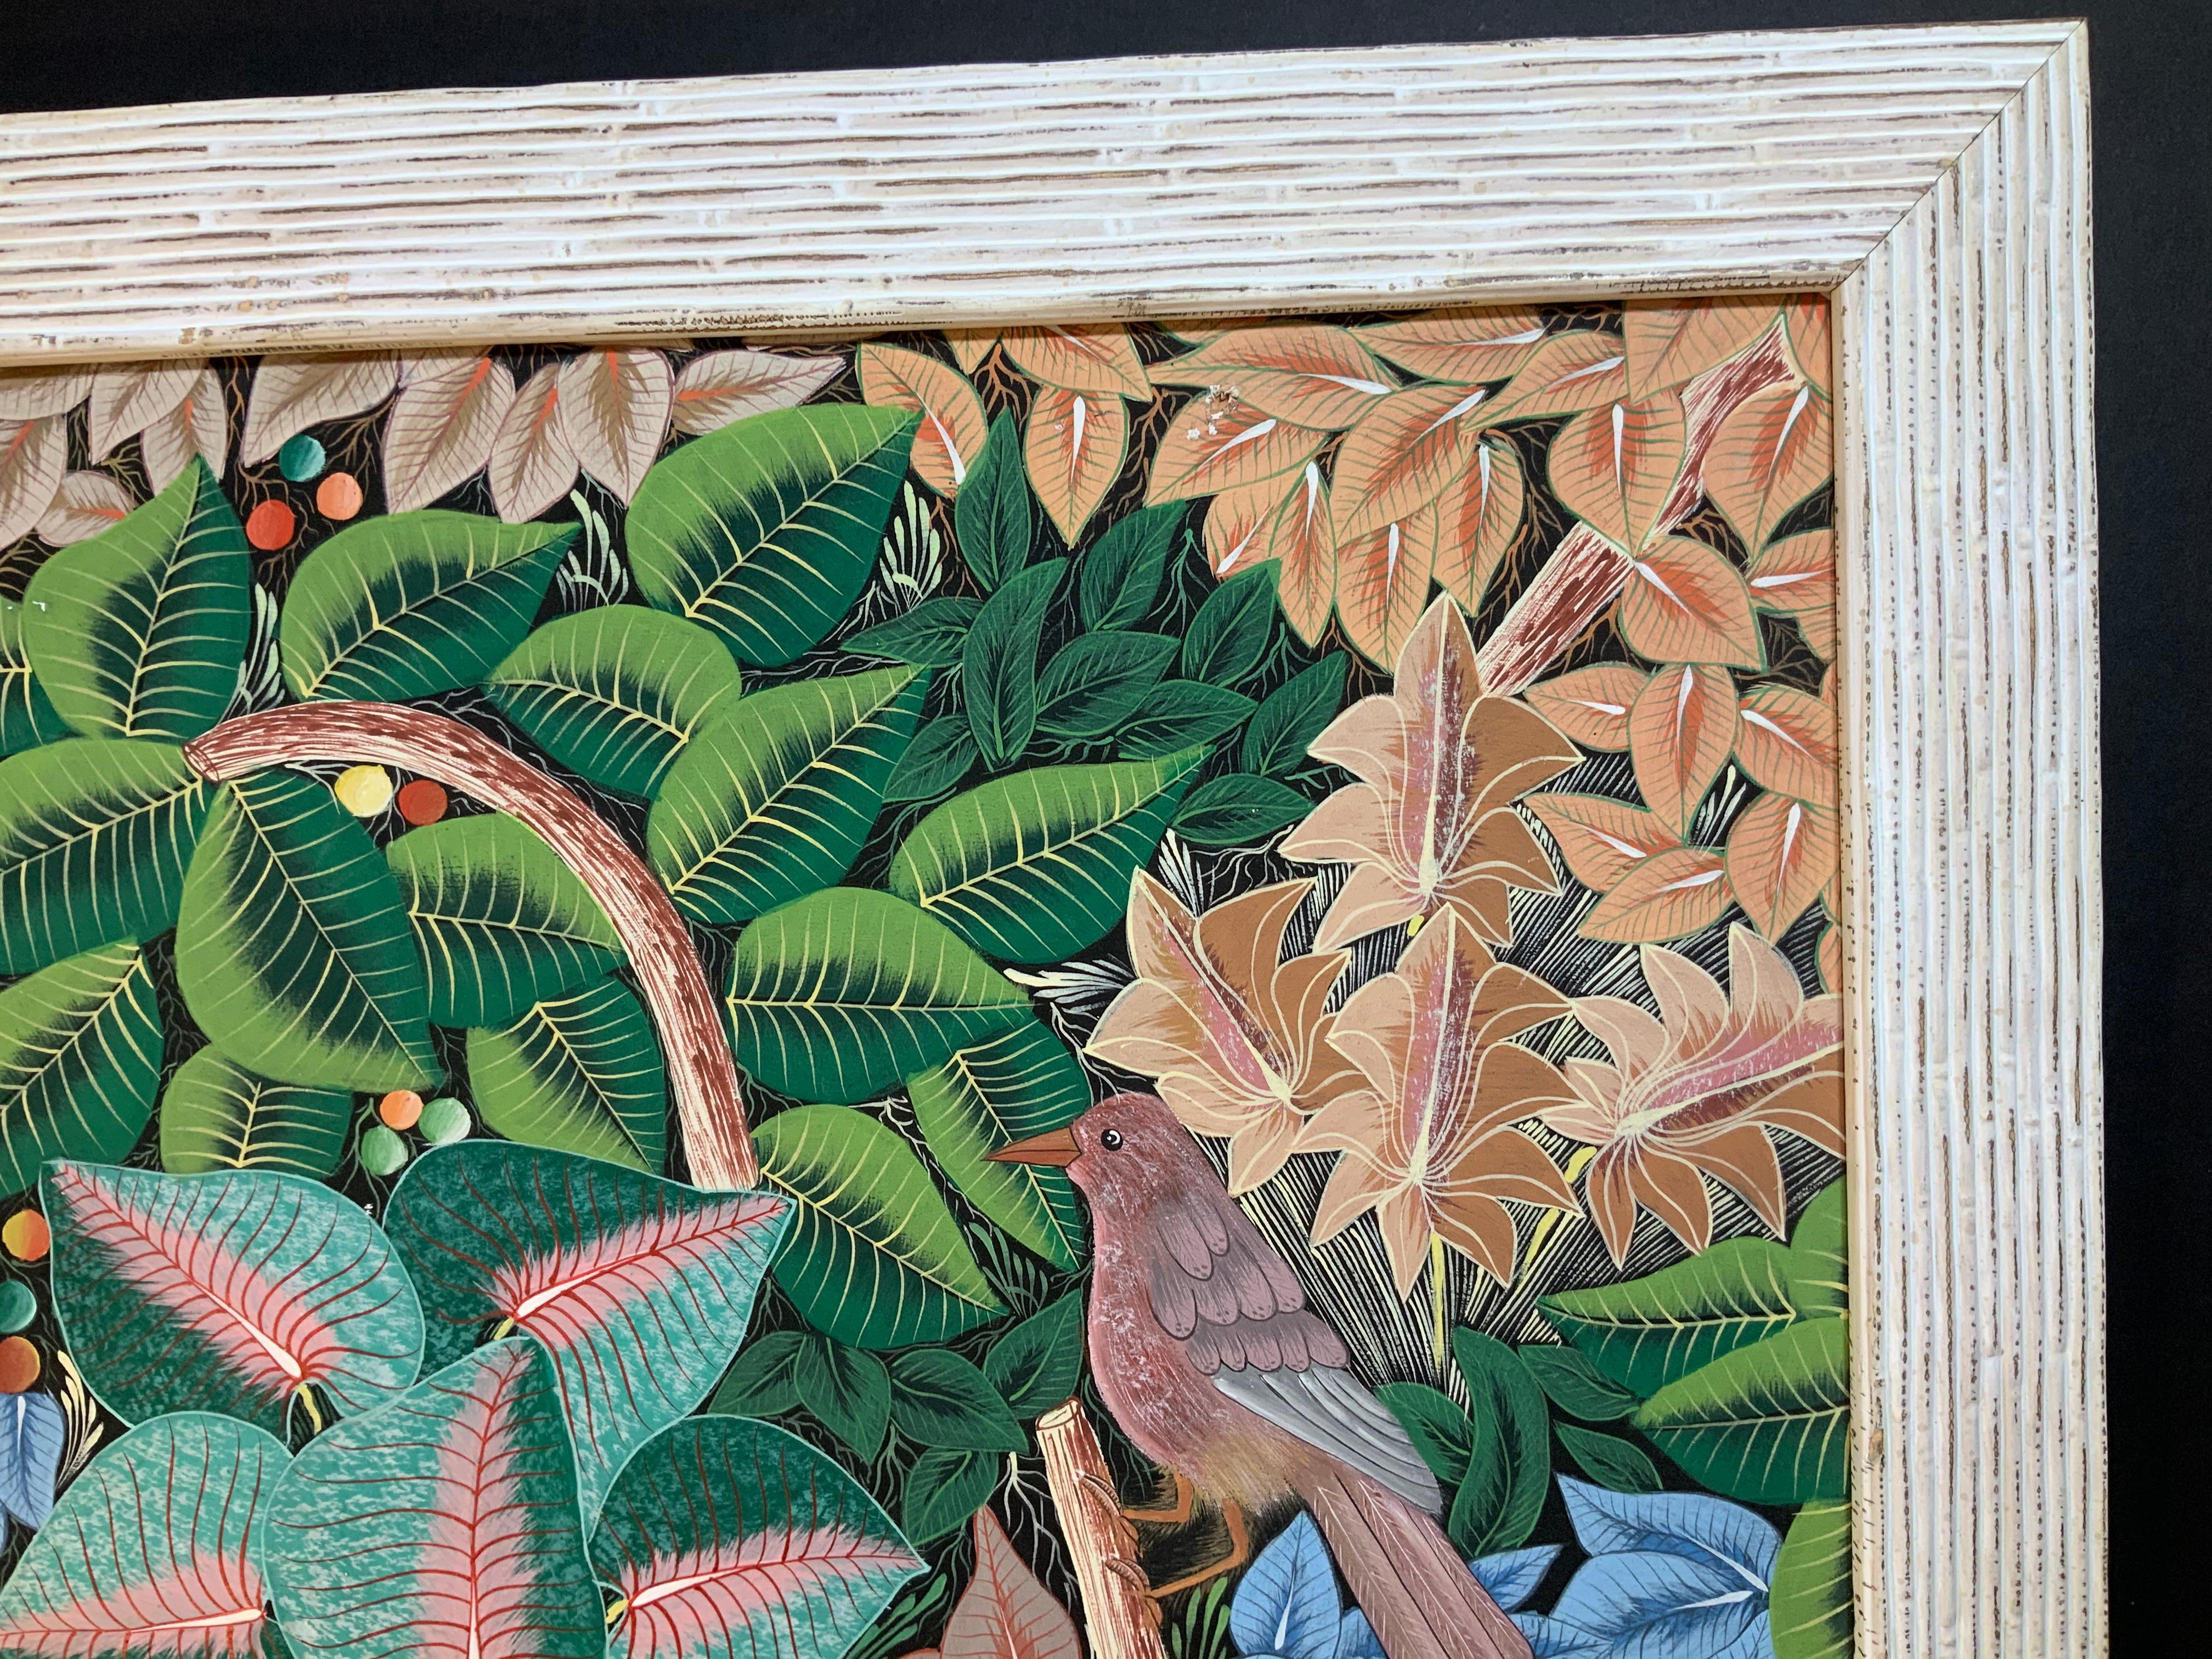 Haïtien Peinture acrylique sur toile Haitian « Parrots in the Jungle » (Perroquets dans la jungle) en vente